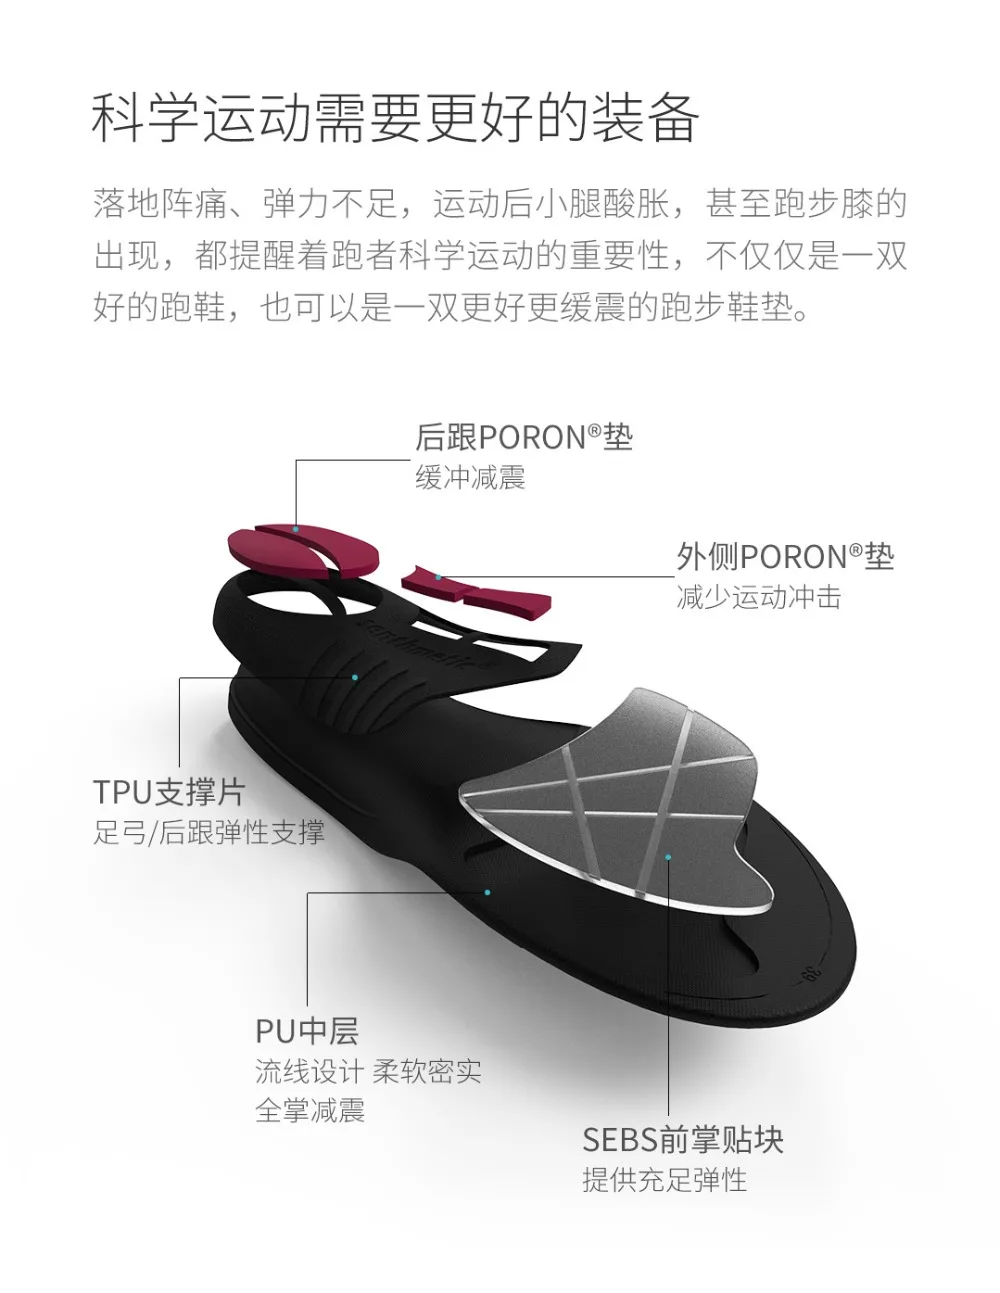 Xiaomi Youpin амортизирующая стелька для бега несколько амортизирующих мощностей поддержка защиты подошвы спортивная стелька